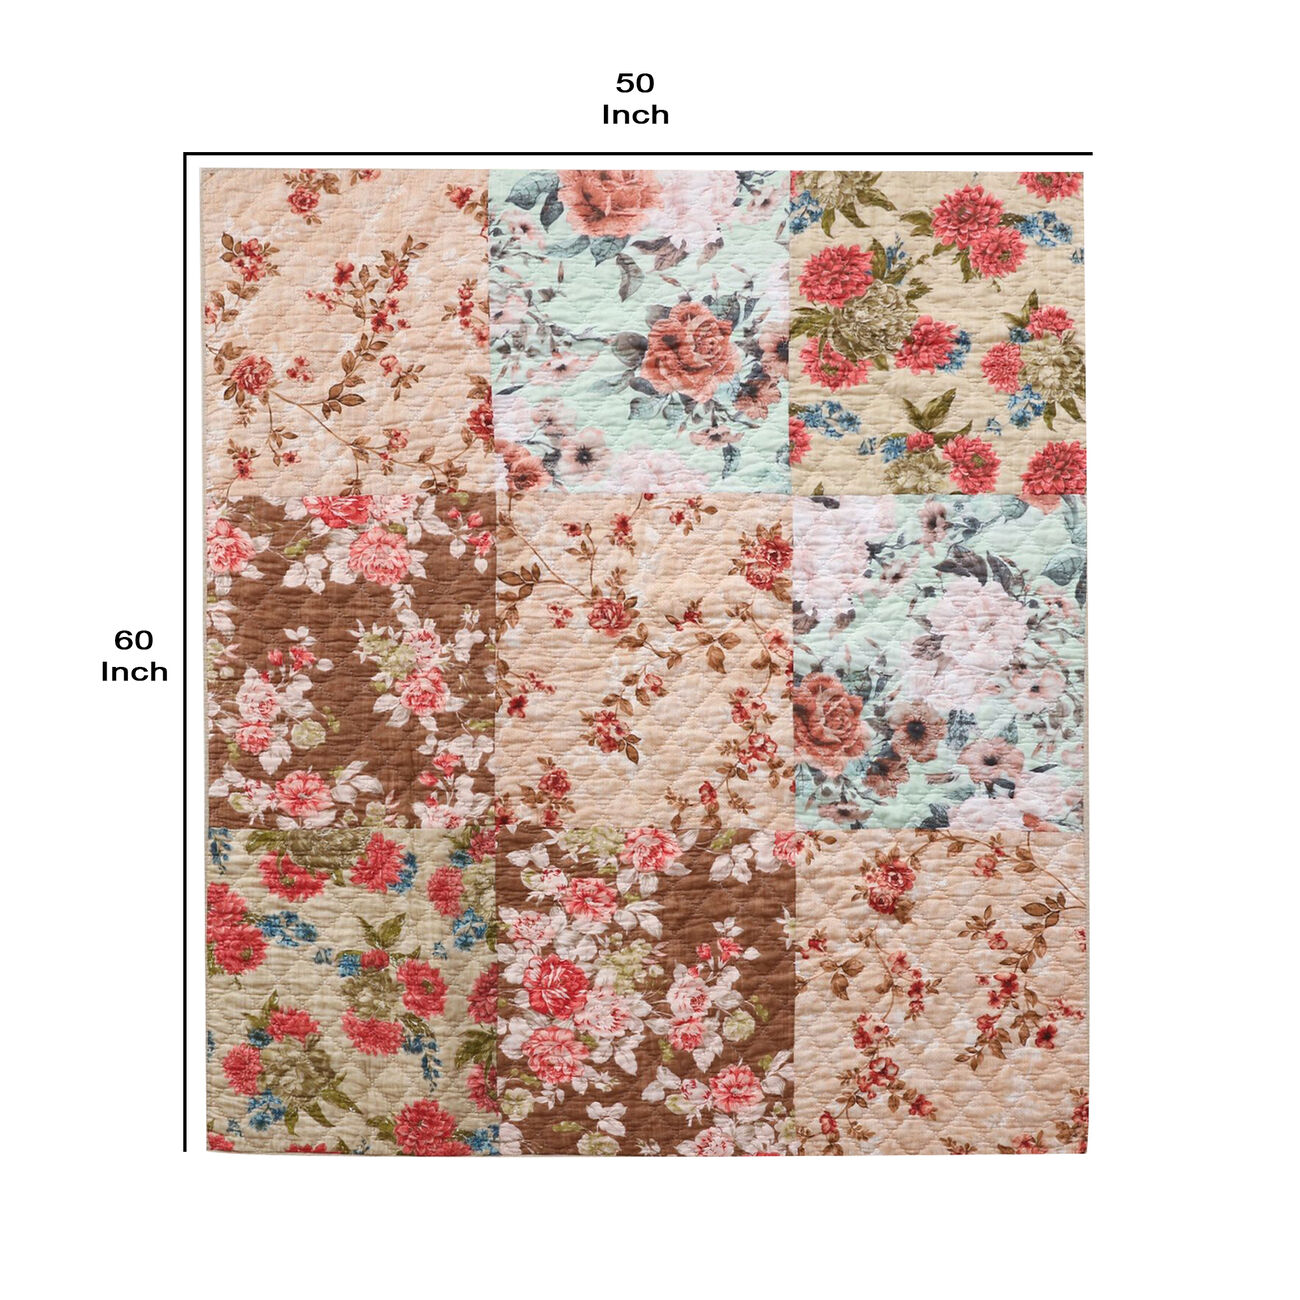 Munich Machine Quilted Floral Print Fabric Throw Blanket, Beige